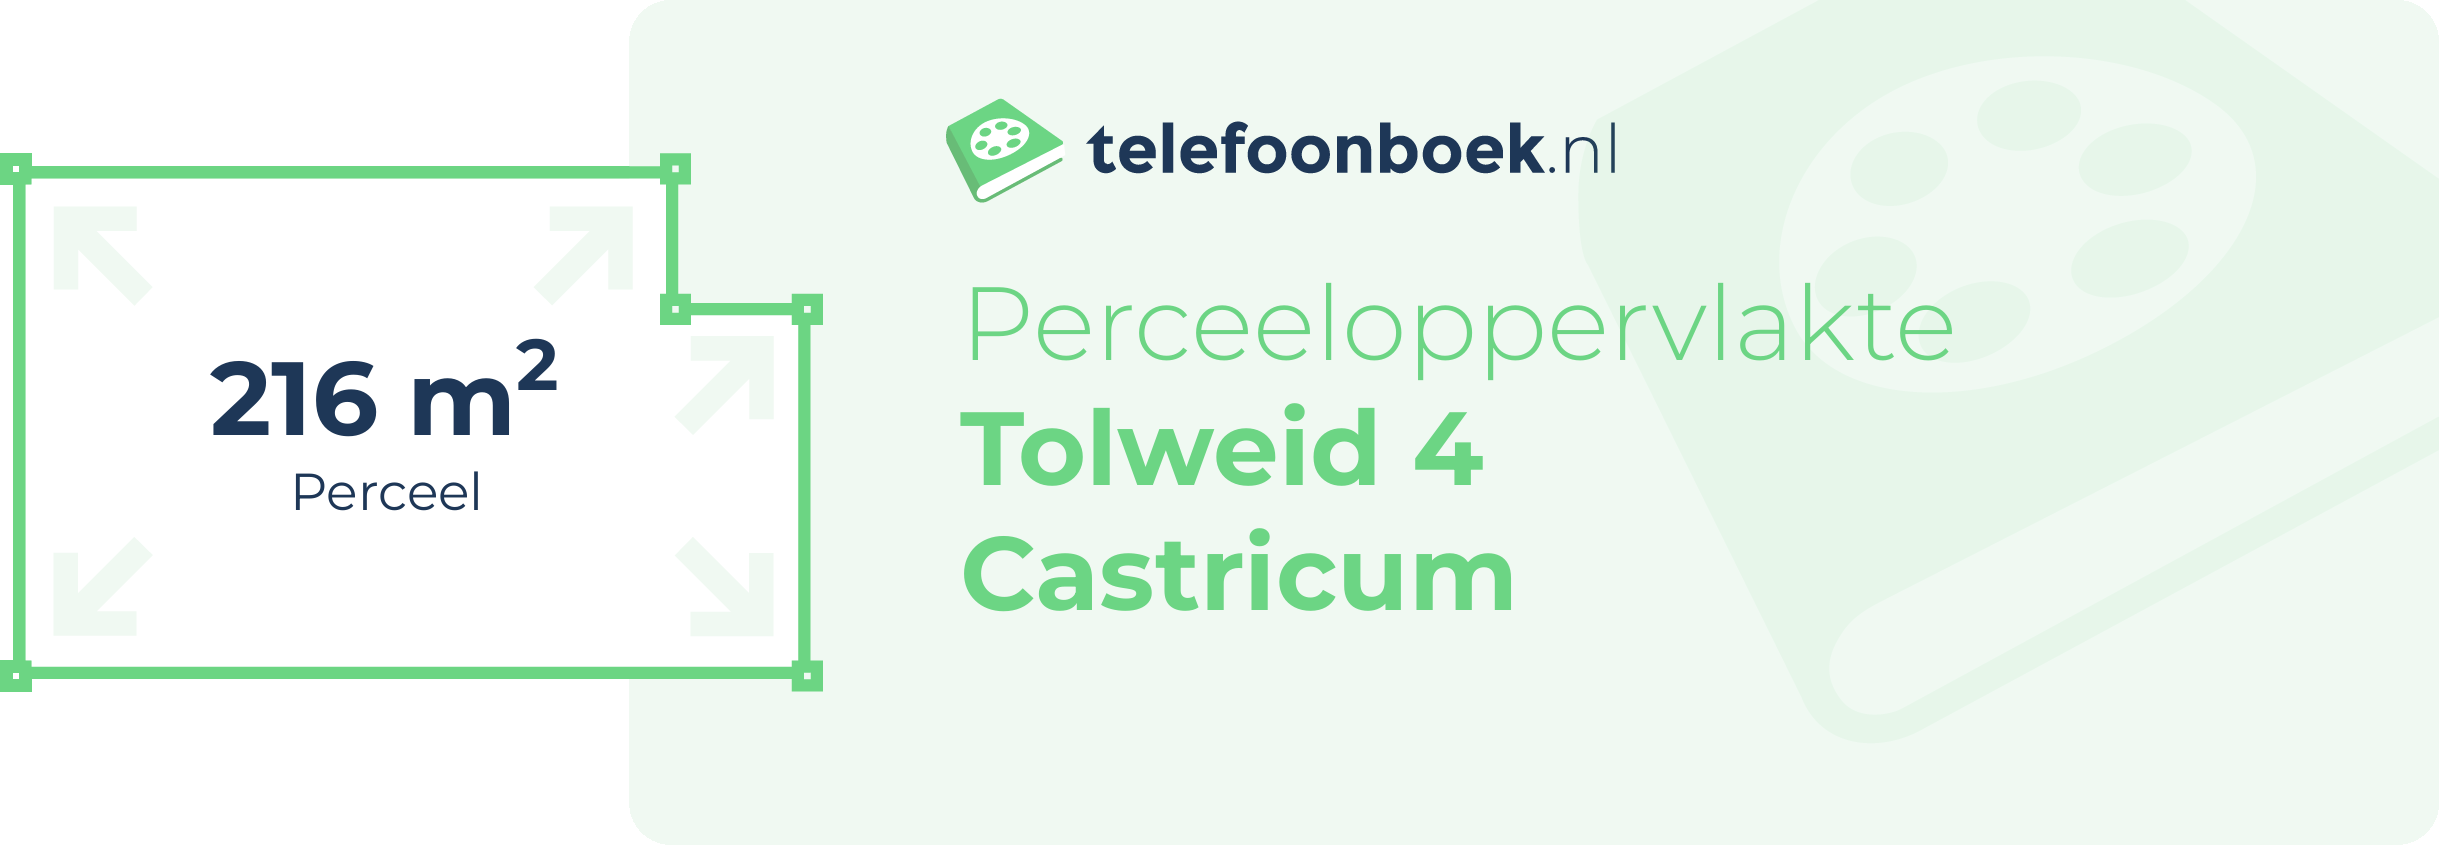 Perceeloppervlakte Tolweid 4 Castricum